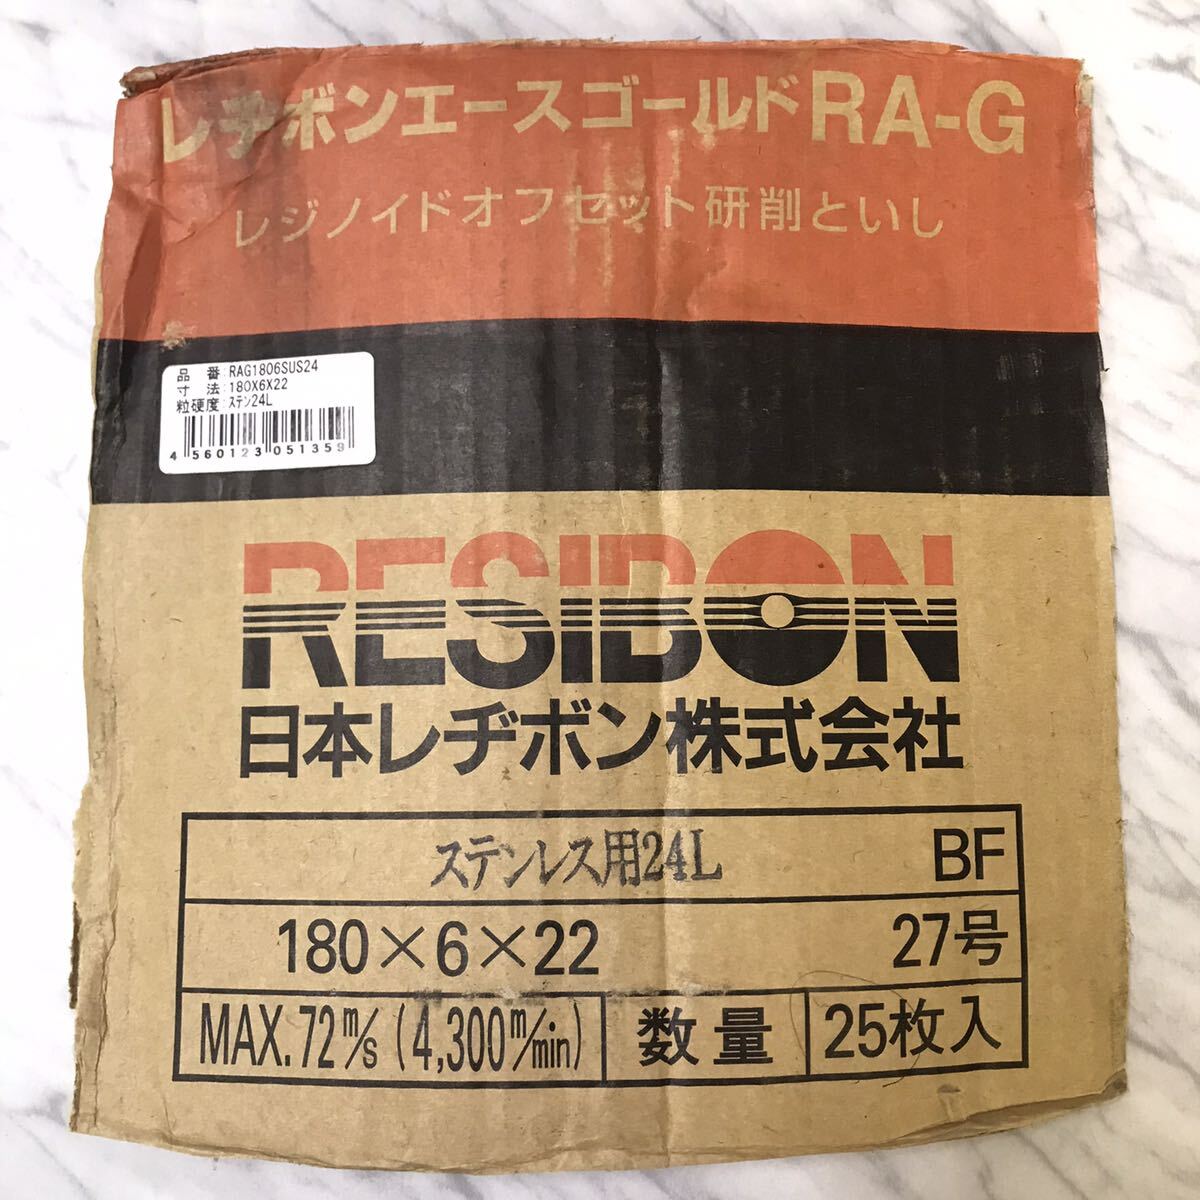 送料無料 未使用品 日本レヂボン レヂボンエースゴールド RA-G ステンレス用 24L 180x6x22 27号 21枚セット/レジボン エースゴールド RA-G